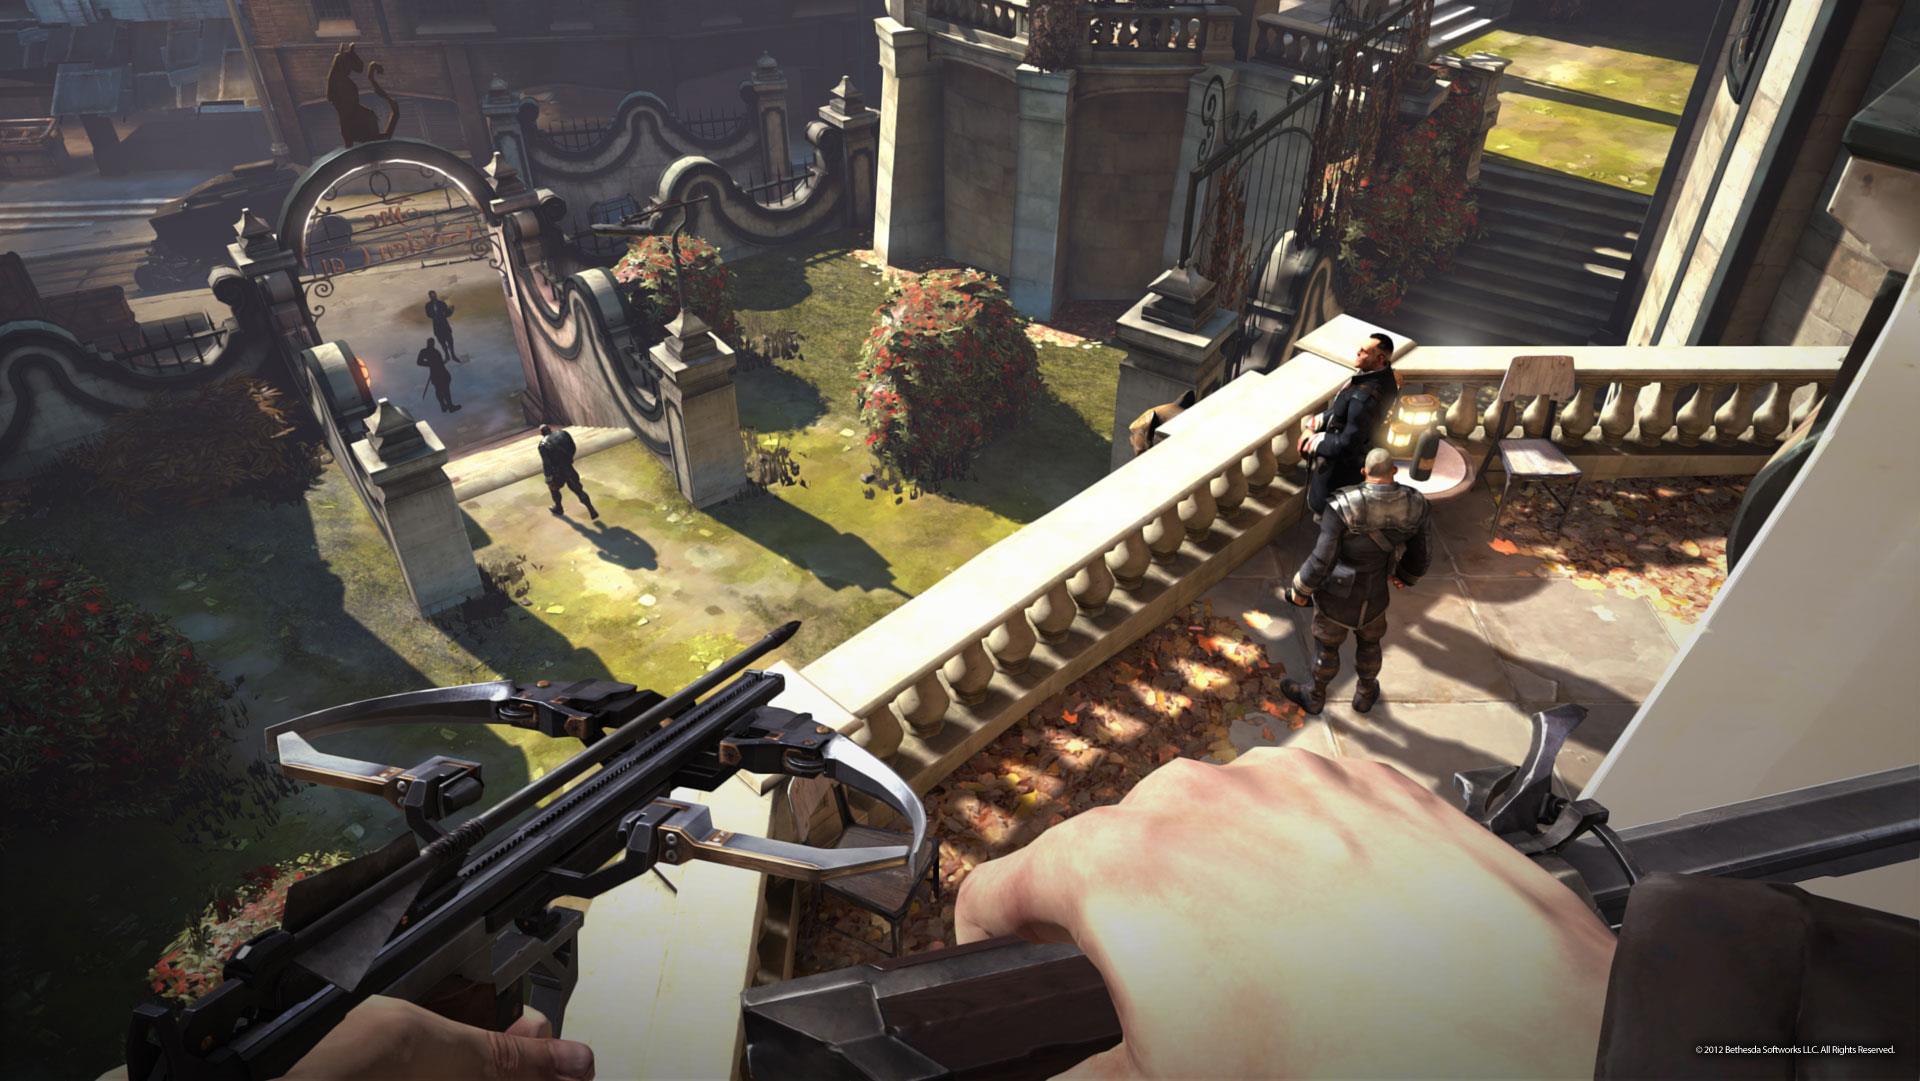 Immagine pubblicata in relazione al seguente contenuto: Arkane Studios mostra nuovi screenshot del game Dishonored | Nome immagine: news17137_4.jpg